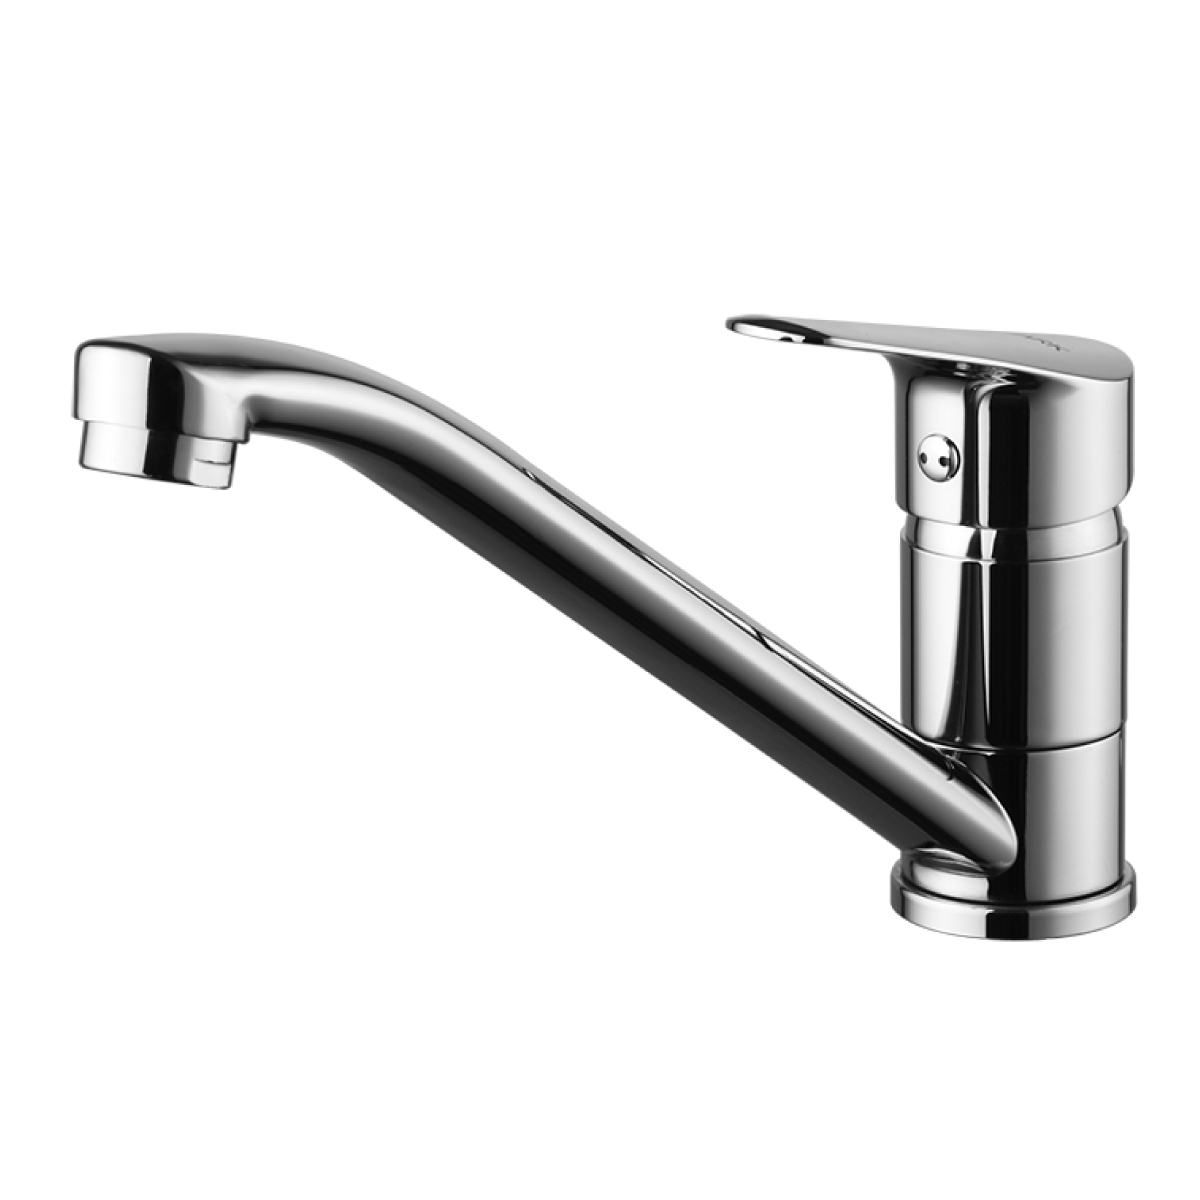 LM6554C Kitchen faucet with swivel spout